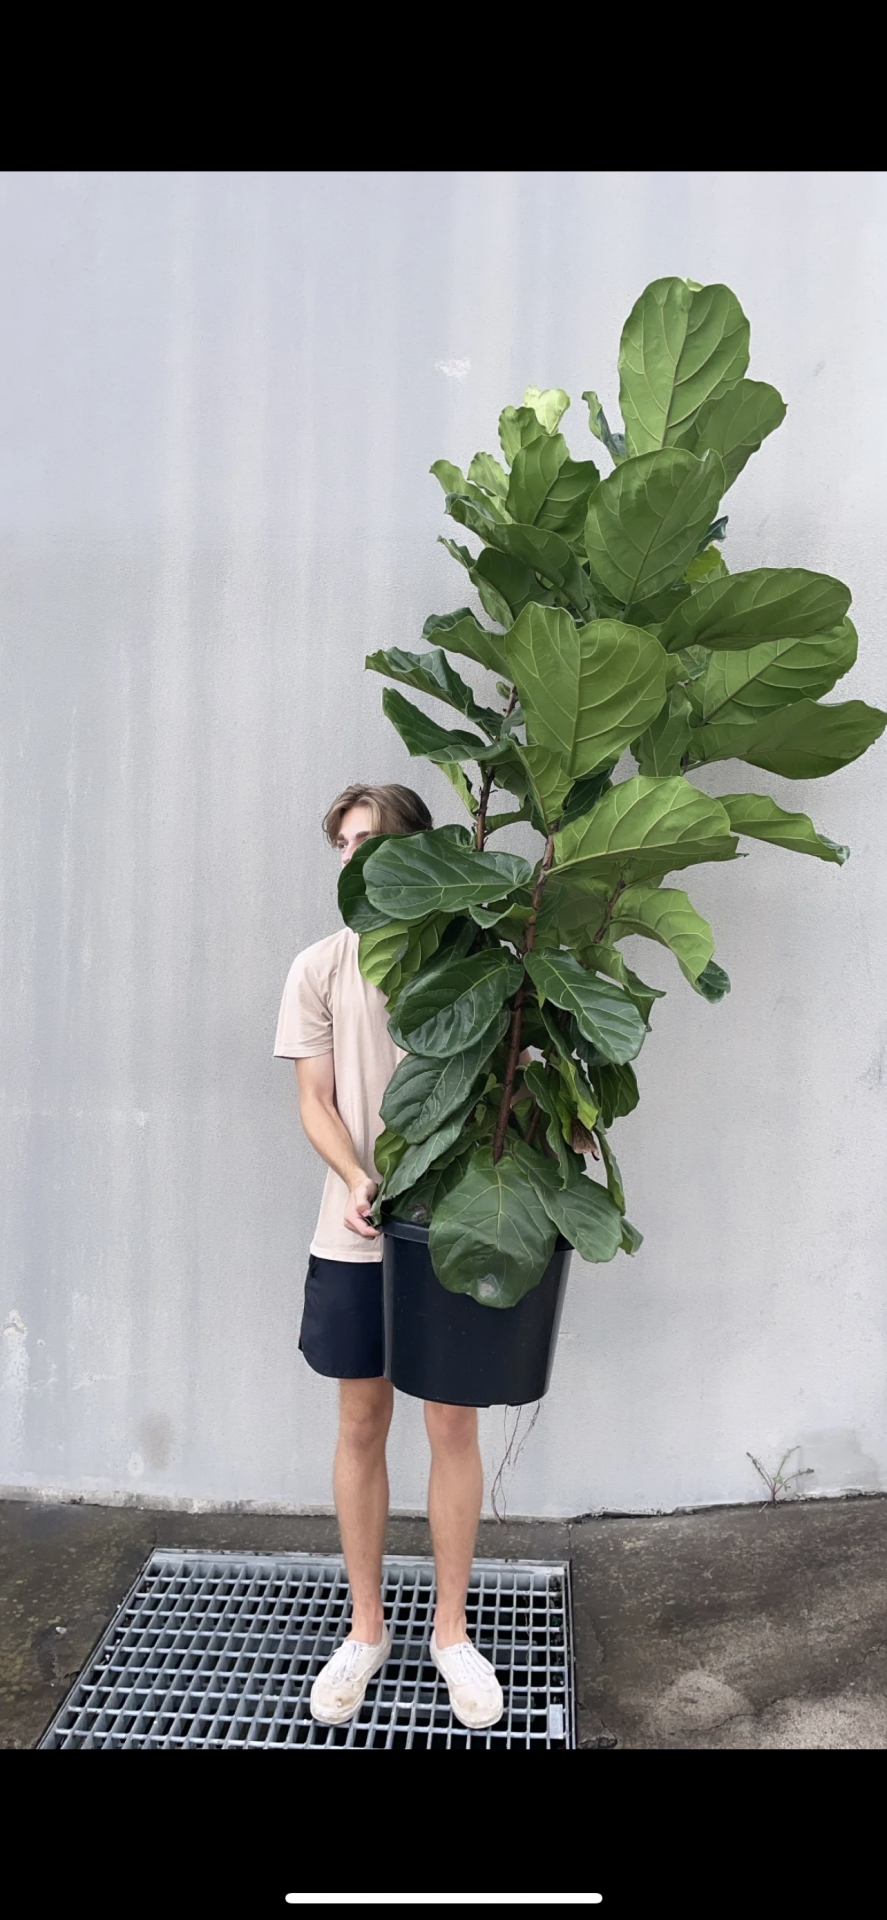 Large, oversized plants